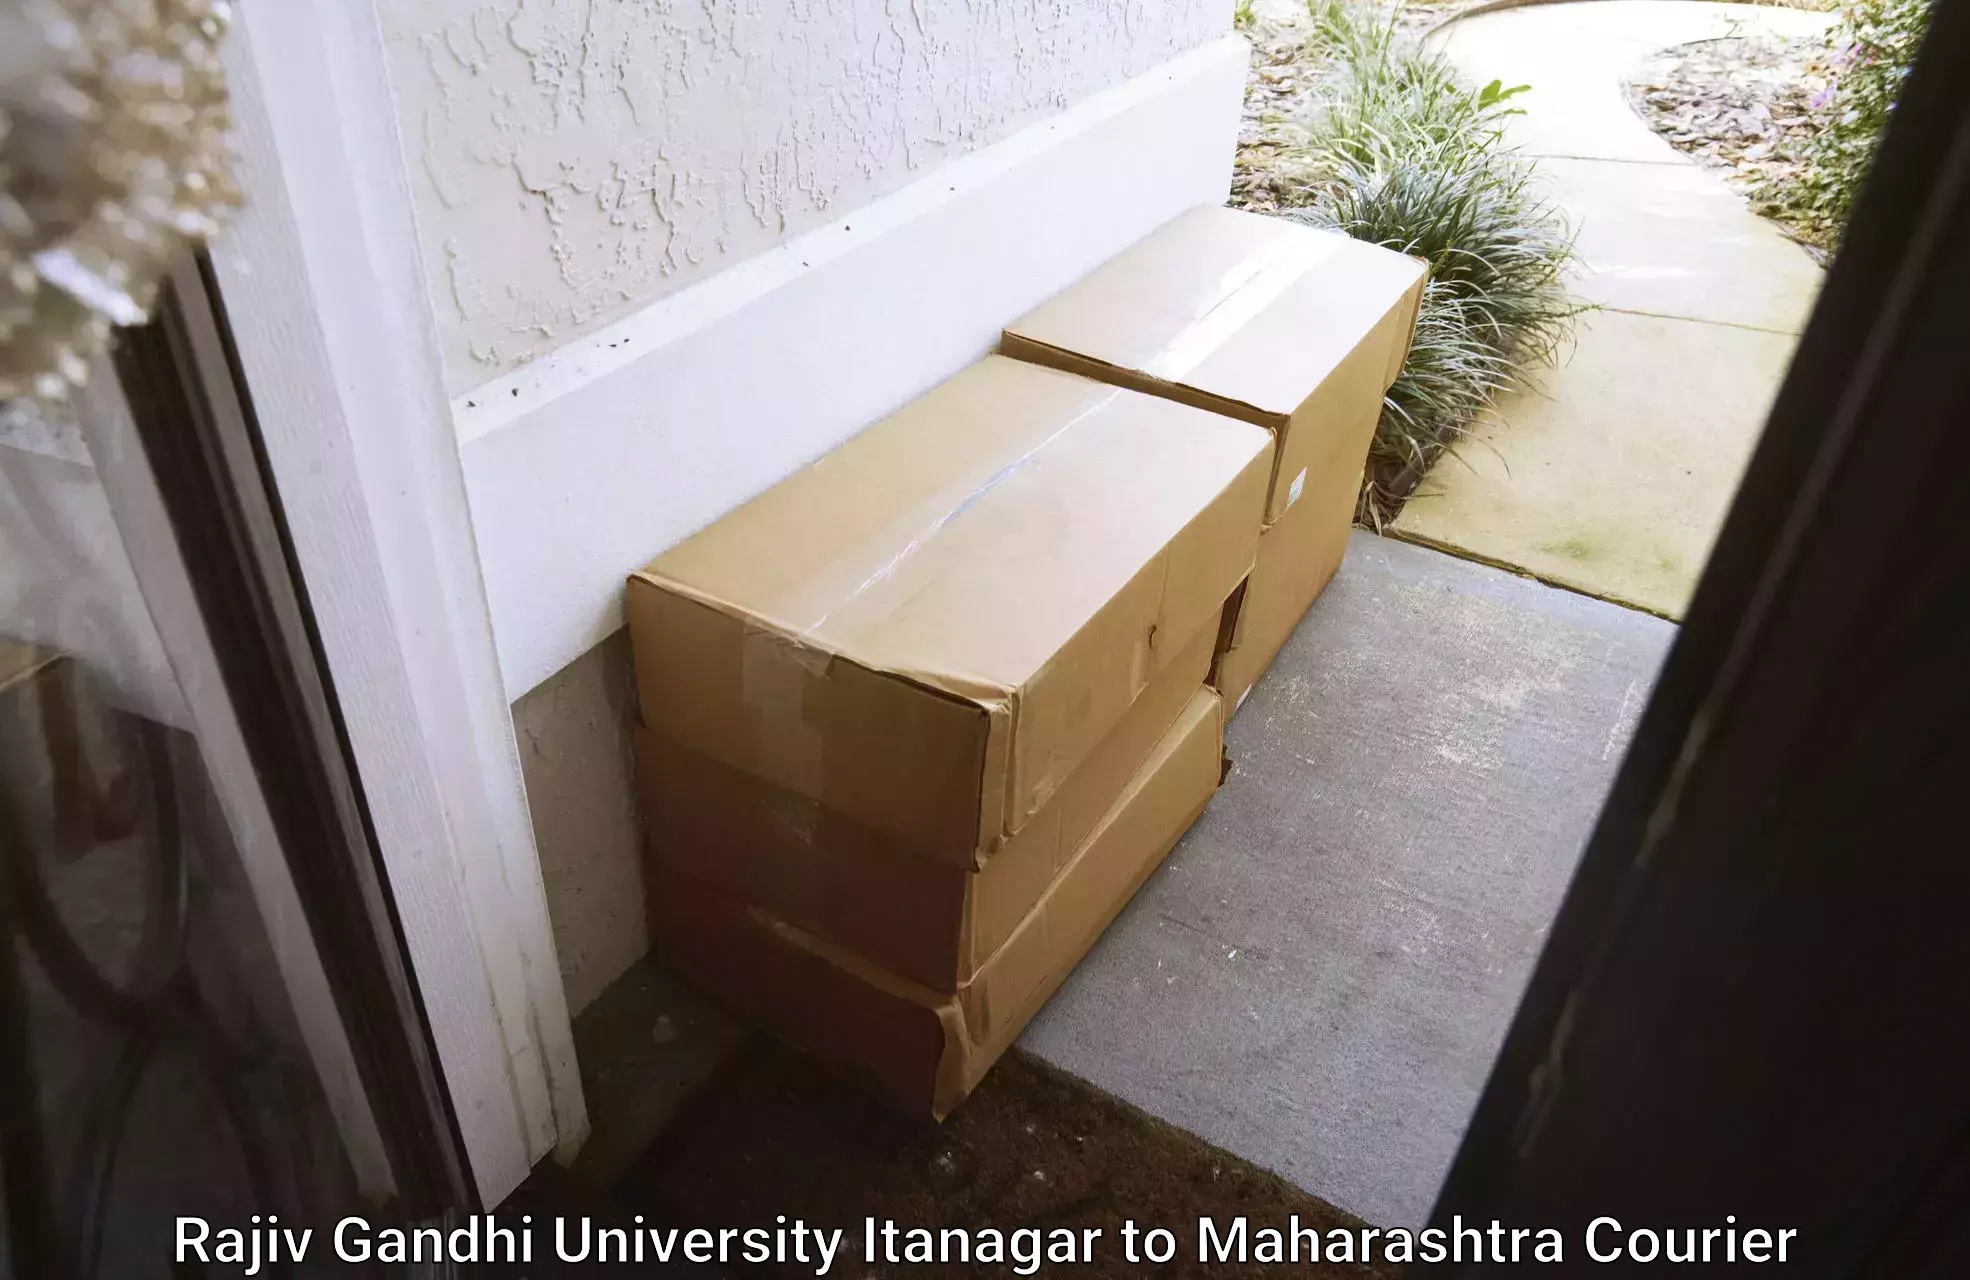 Custom courier packaging Rajiv Gandhi University Itanagar to Chiplun